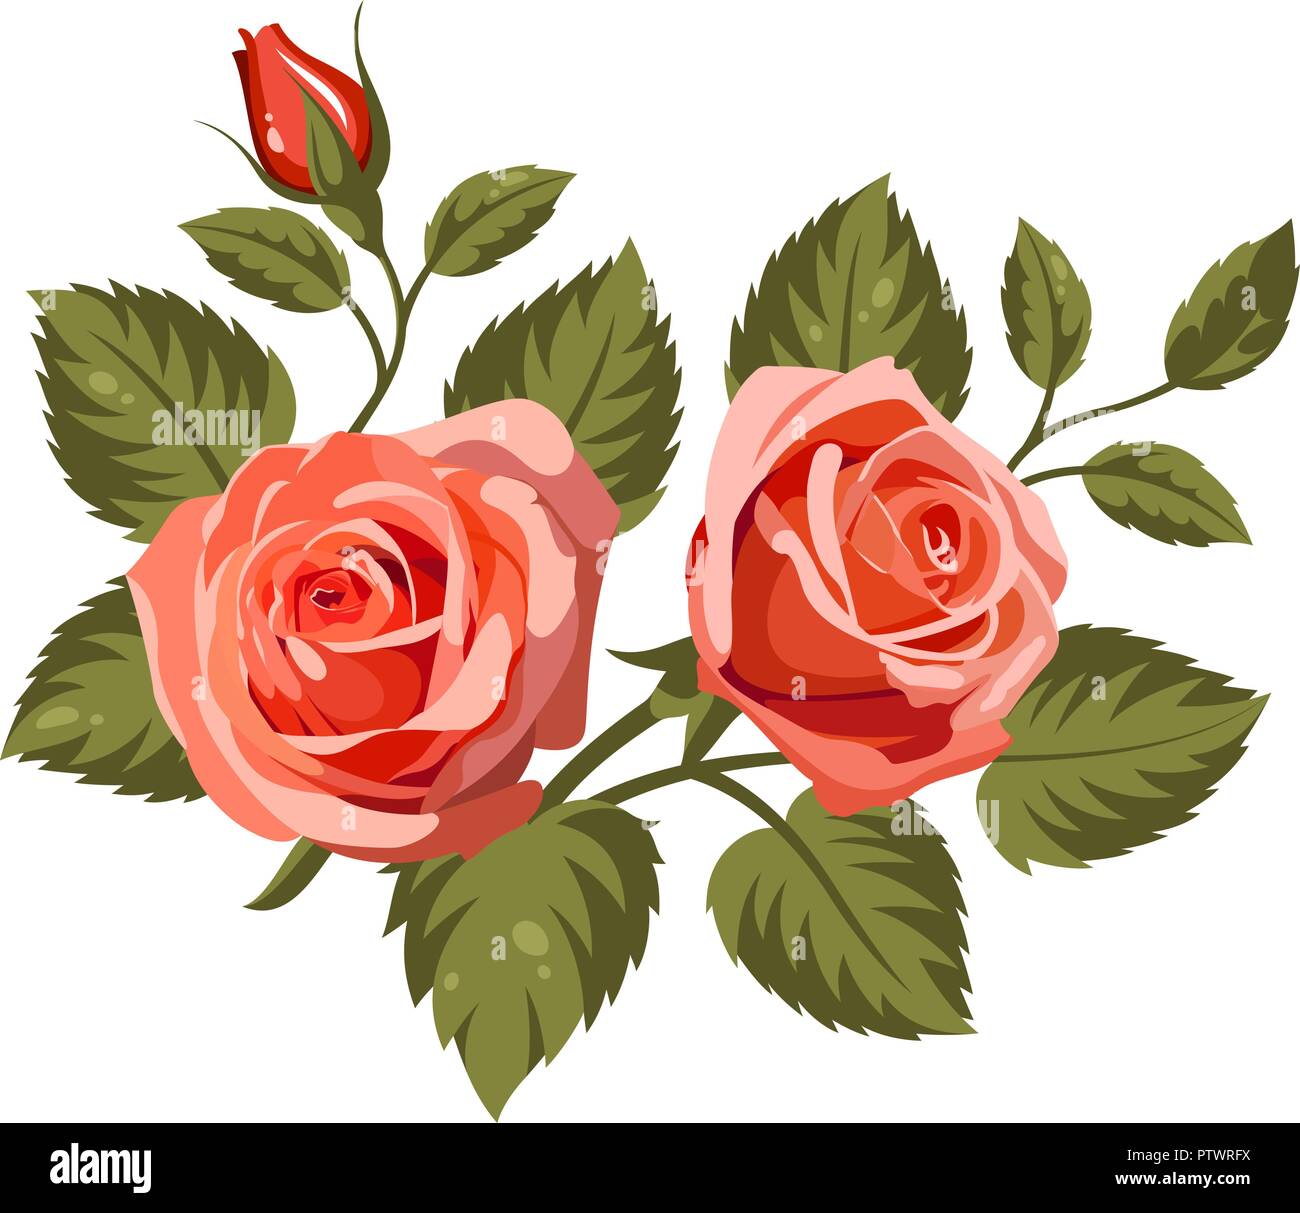 Illustrazione Vettoriale di rose rosse isolato su sfondo bianco. Utilizzare per il disegno di tessuto, riempimenti e decorare cartoline di auguri, inviti Illustrazione Vettoriale